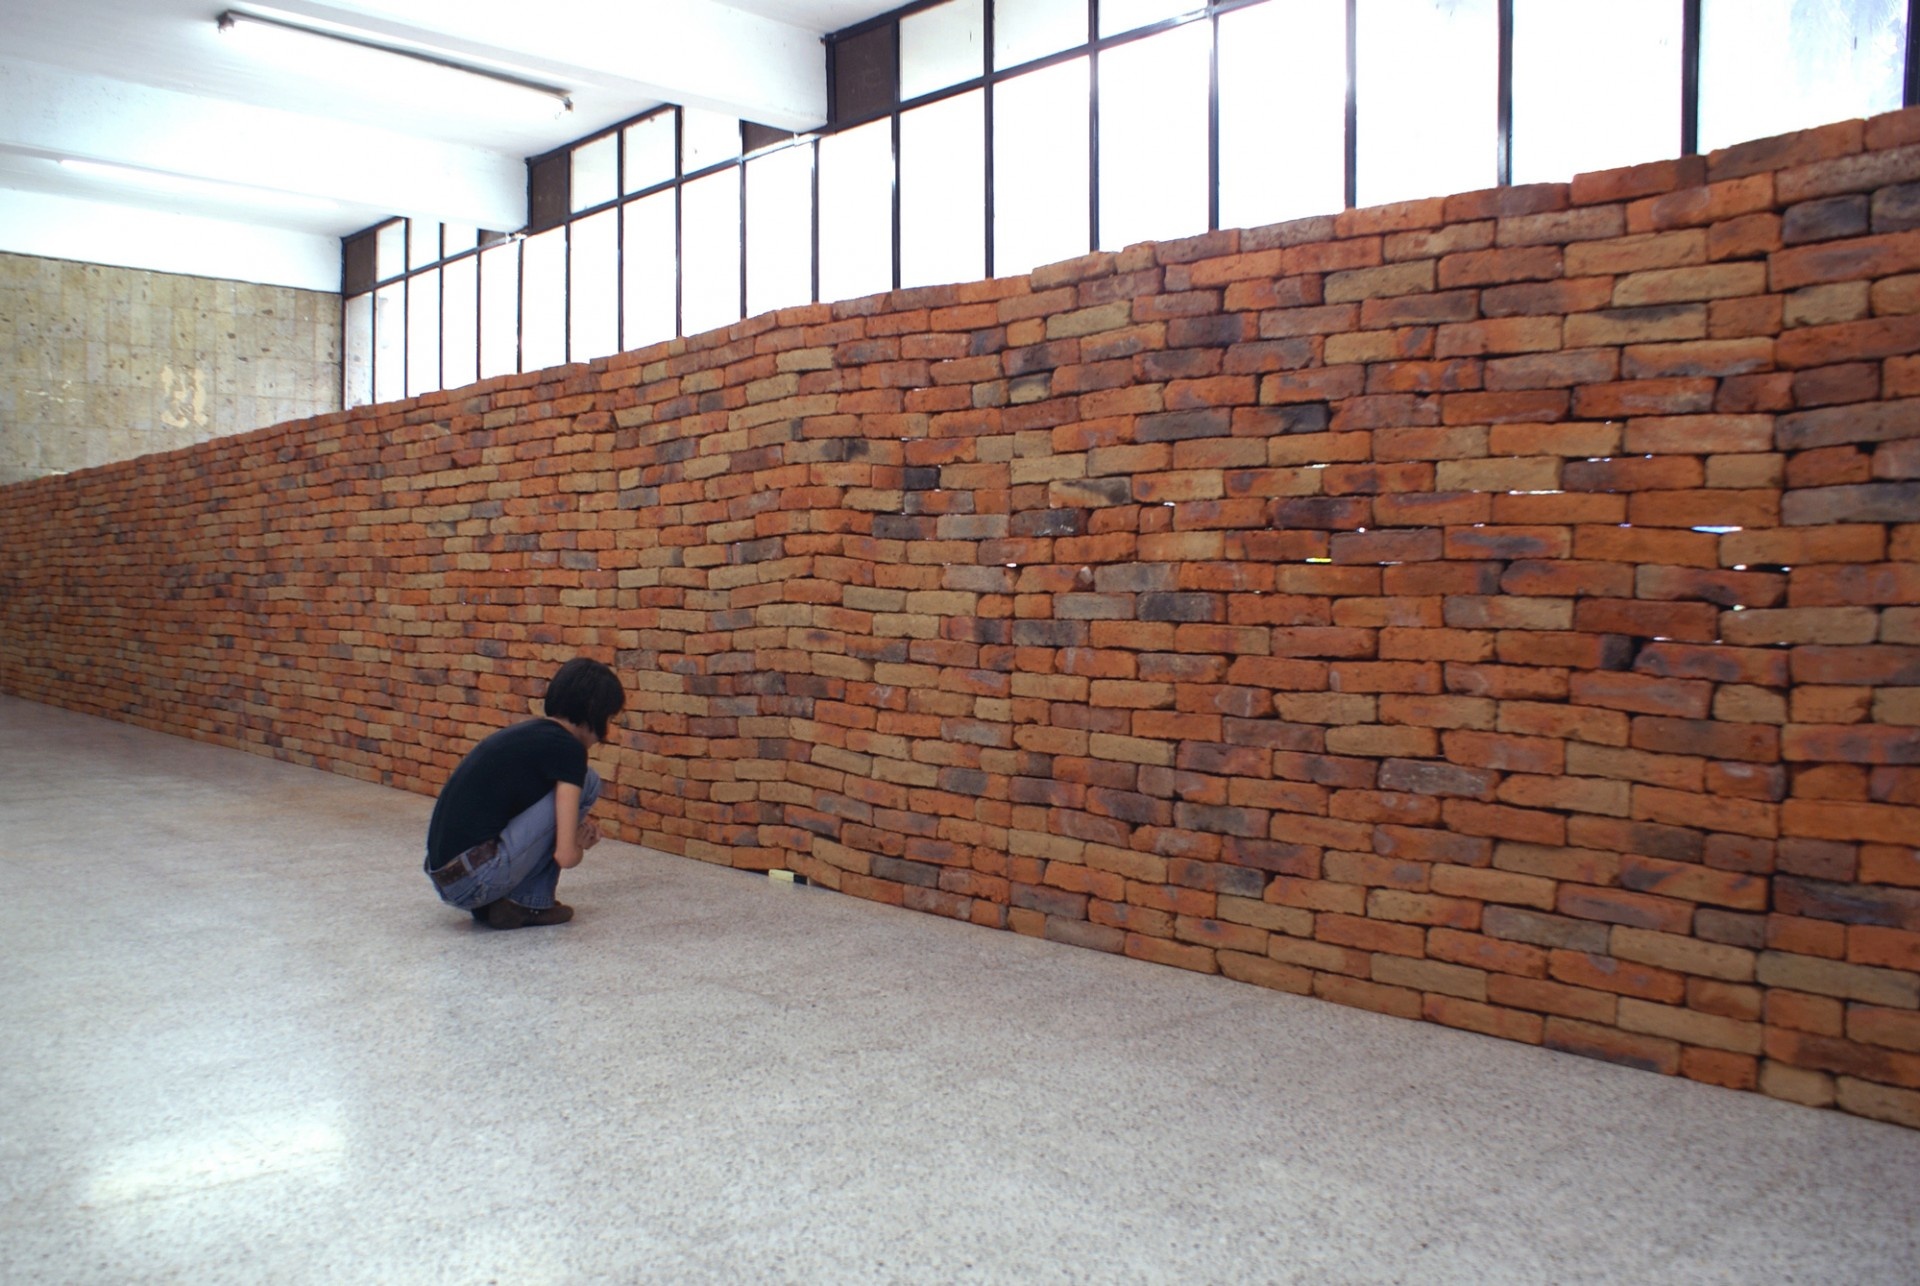 一本书打破了砖墙的根基 | 墨西哥艺术家 Jorge